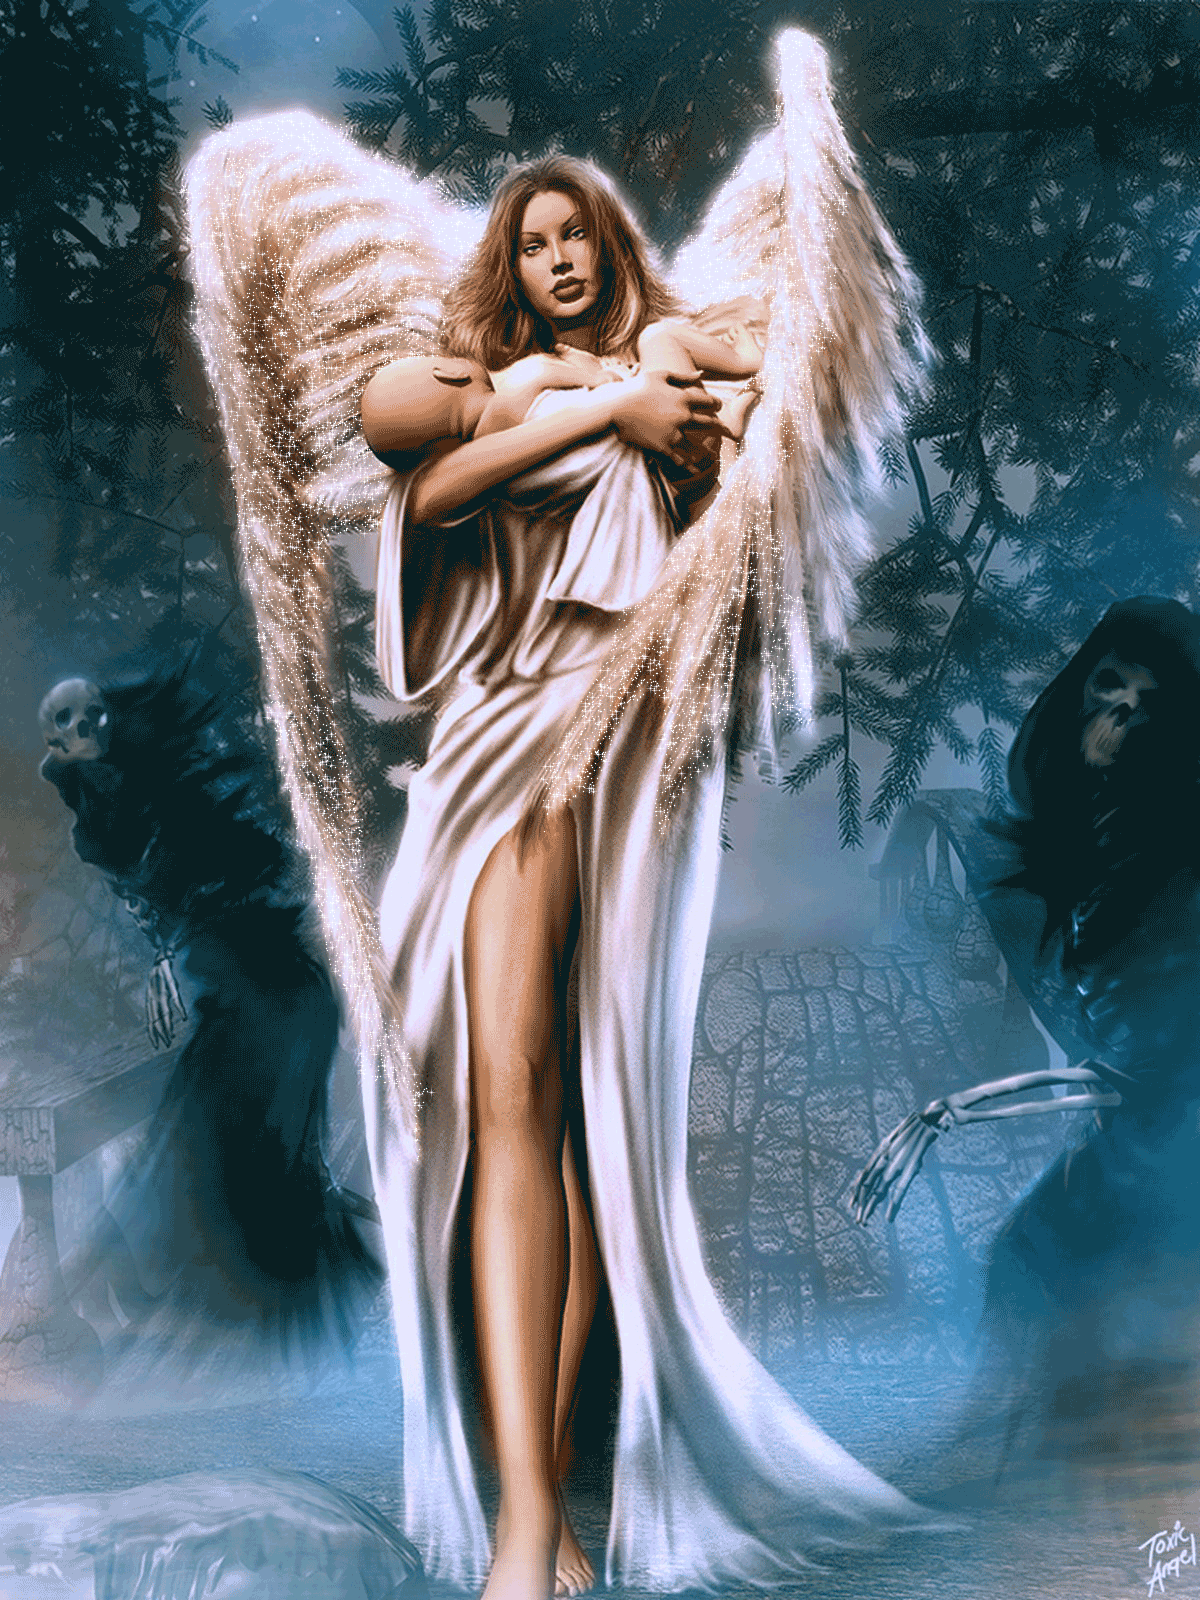 Читать всю серию ангел. Девушка - ангел. Красивый ангел. Изображения ангелов. Картина девушка ангел.